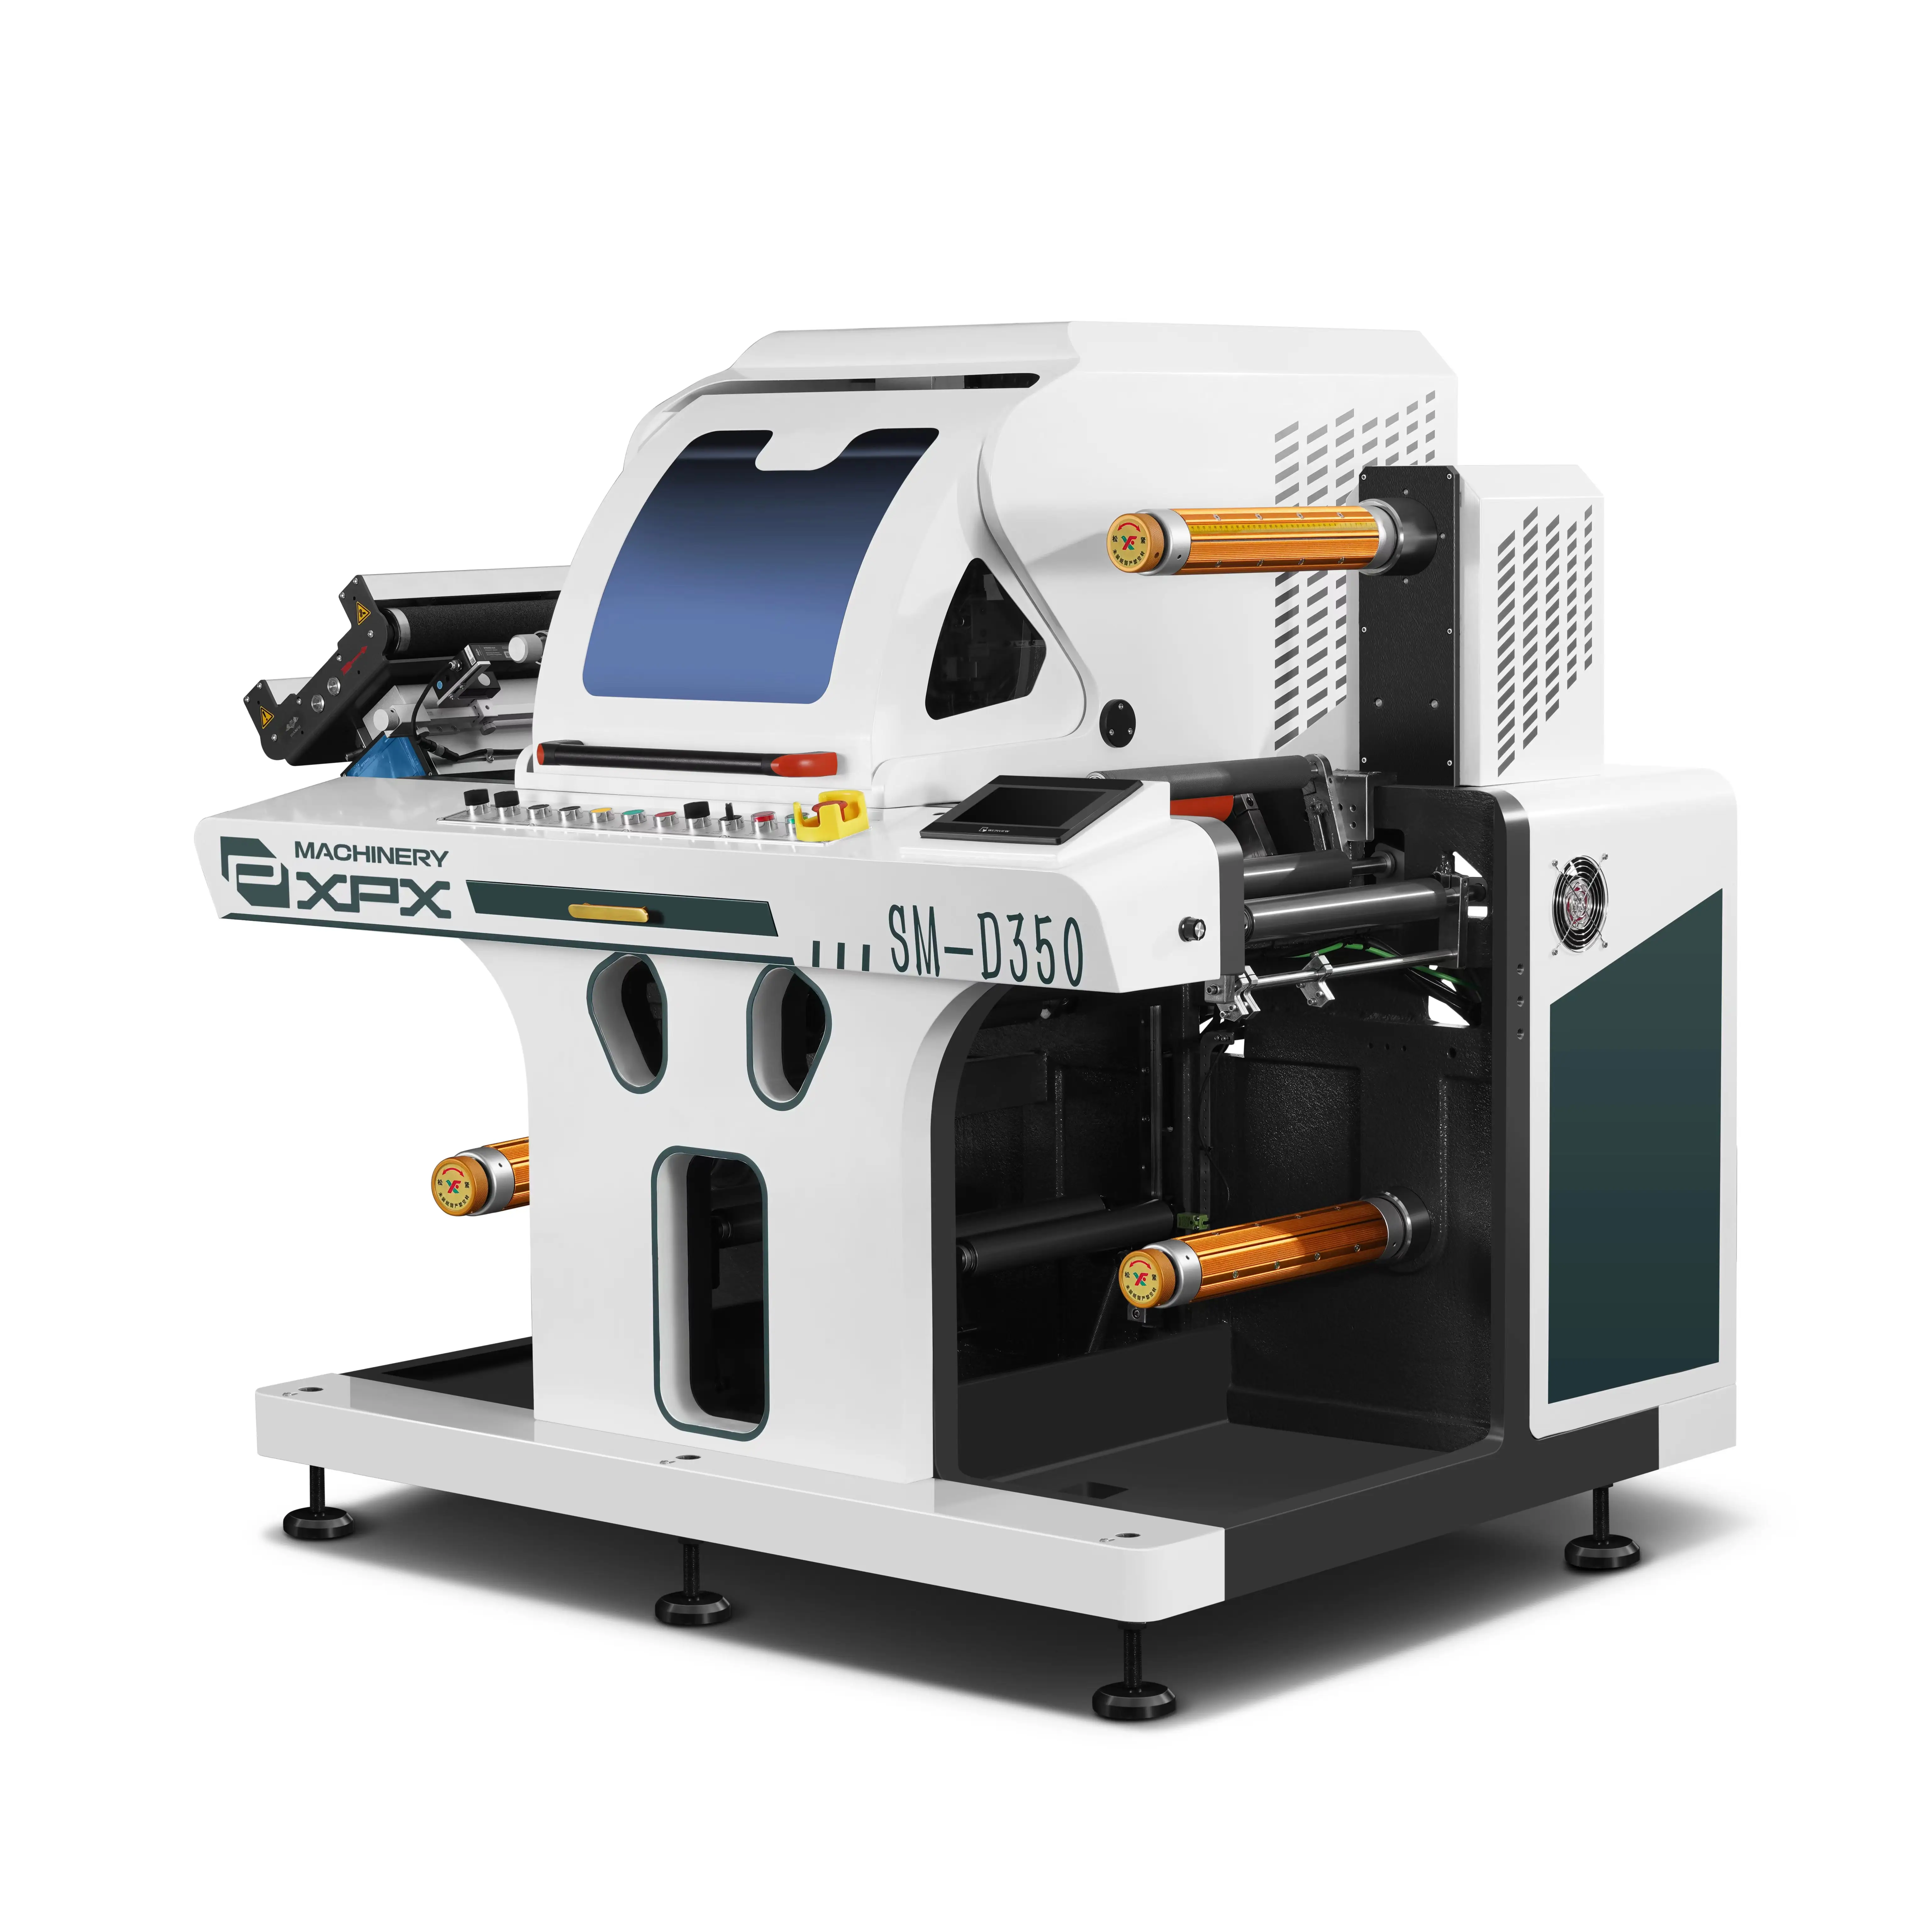 XPX SM-D350 mesin pemotong die digital, mesin pemotong die digital mudah dioperasikan dengan kamera ccd untuk beralih pesanan berikutnya secara otomatis